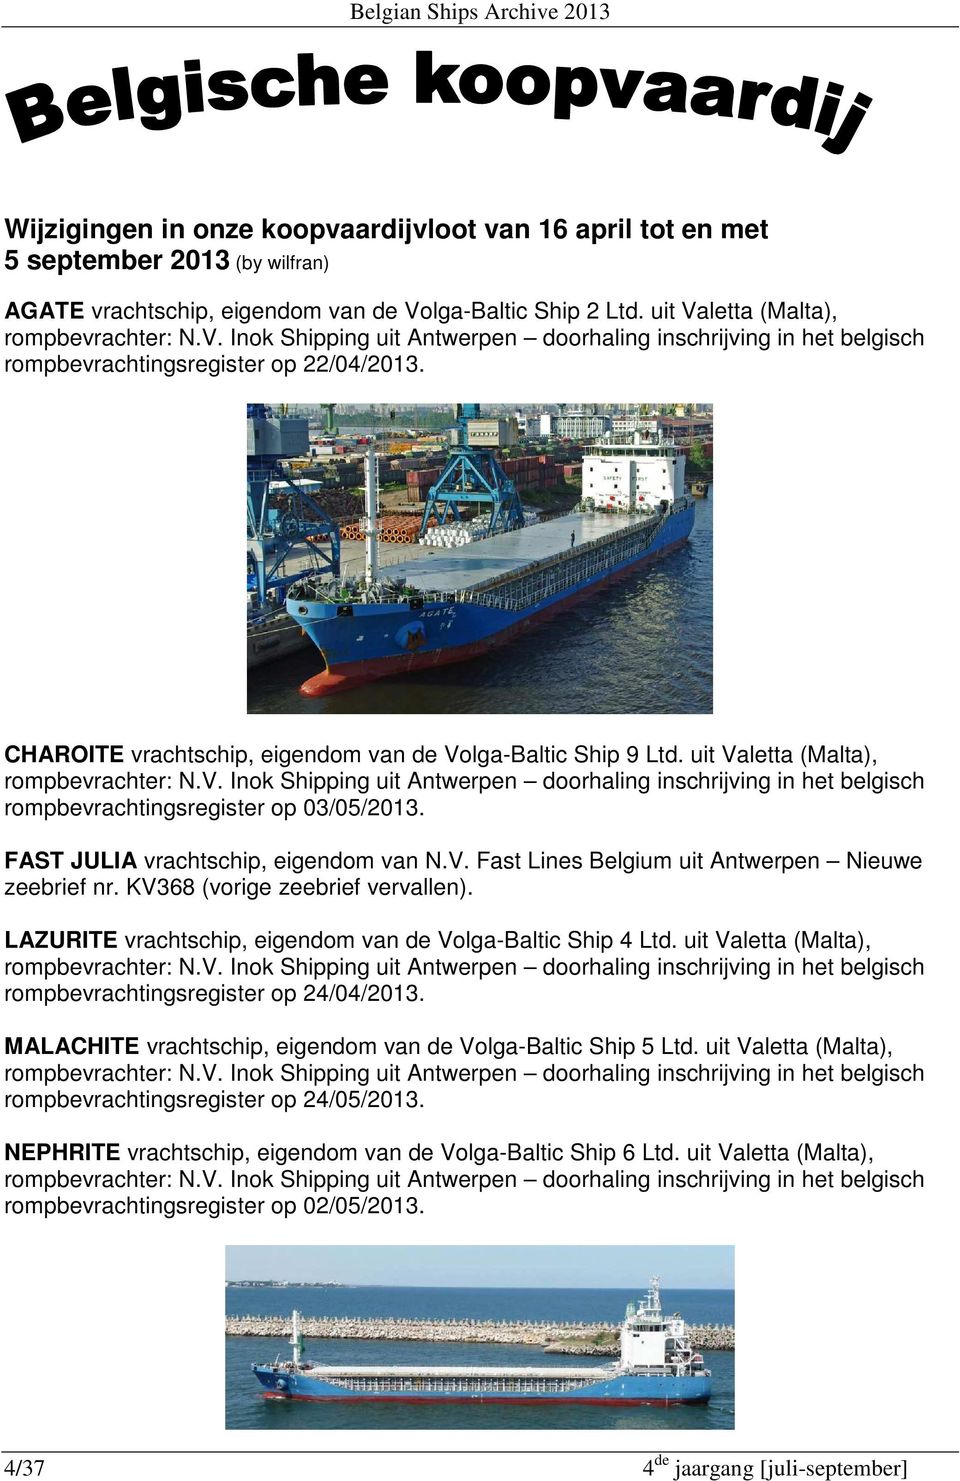 CHAROITE vrachtschip, eigendom van de Volga-Baltic Ship 9 Ltd. uit Valetta (Malta), rompbevrachter: N.V. Inok Shipping uit Antwerpen doorhaling inschrijving in het belgisch rompbevrachtingsregister op 03/05/2013.